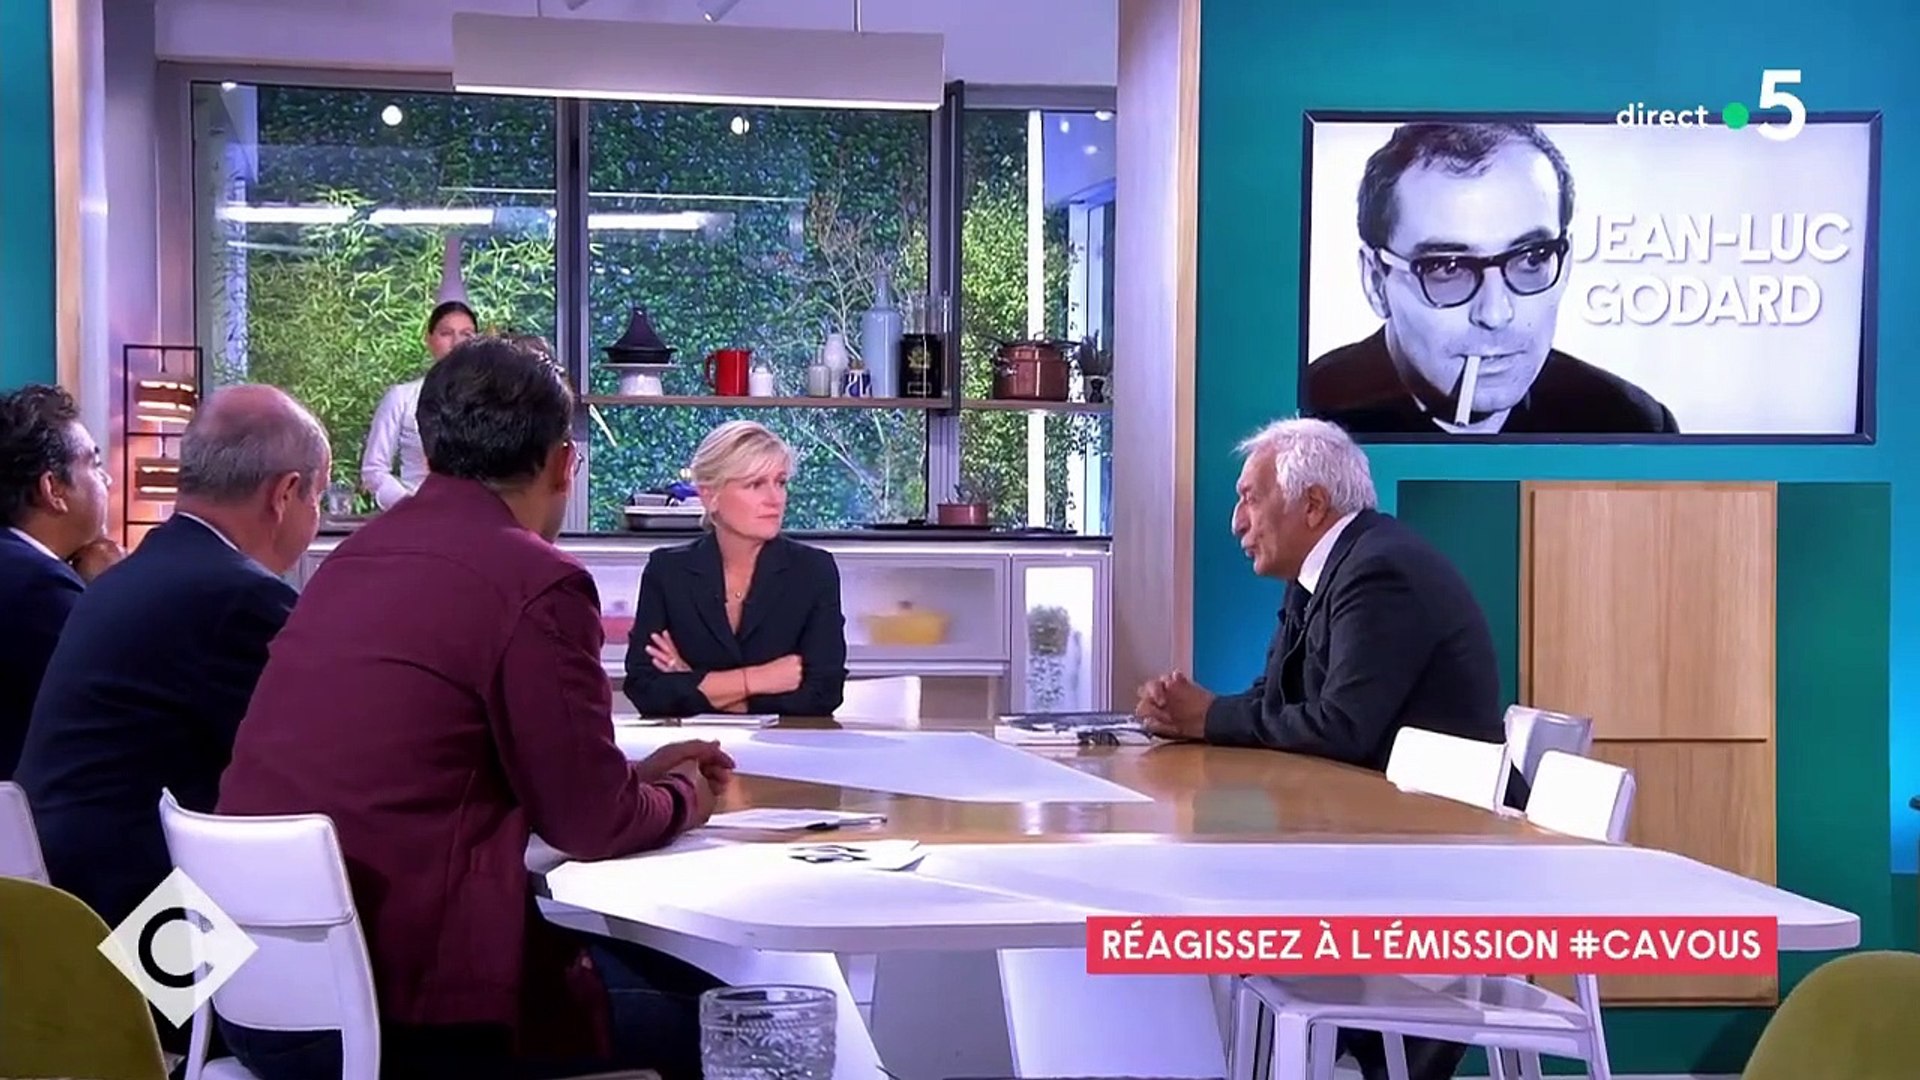 Gérard DarmonGérard Darmon : "Je ne peux pas admirer Jean-Luc Godard,  quelqu'un qui hait à ce point les Juifs" - Vidéo Dailymotion